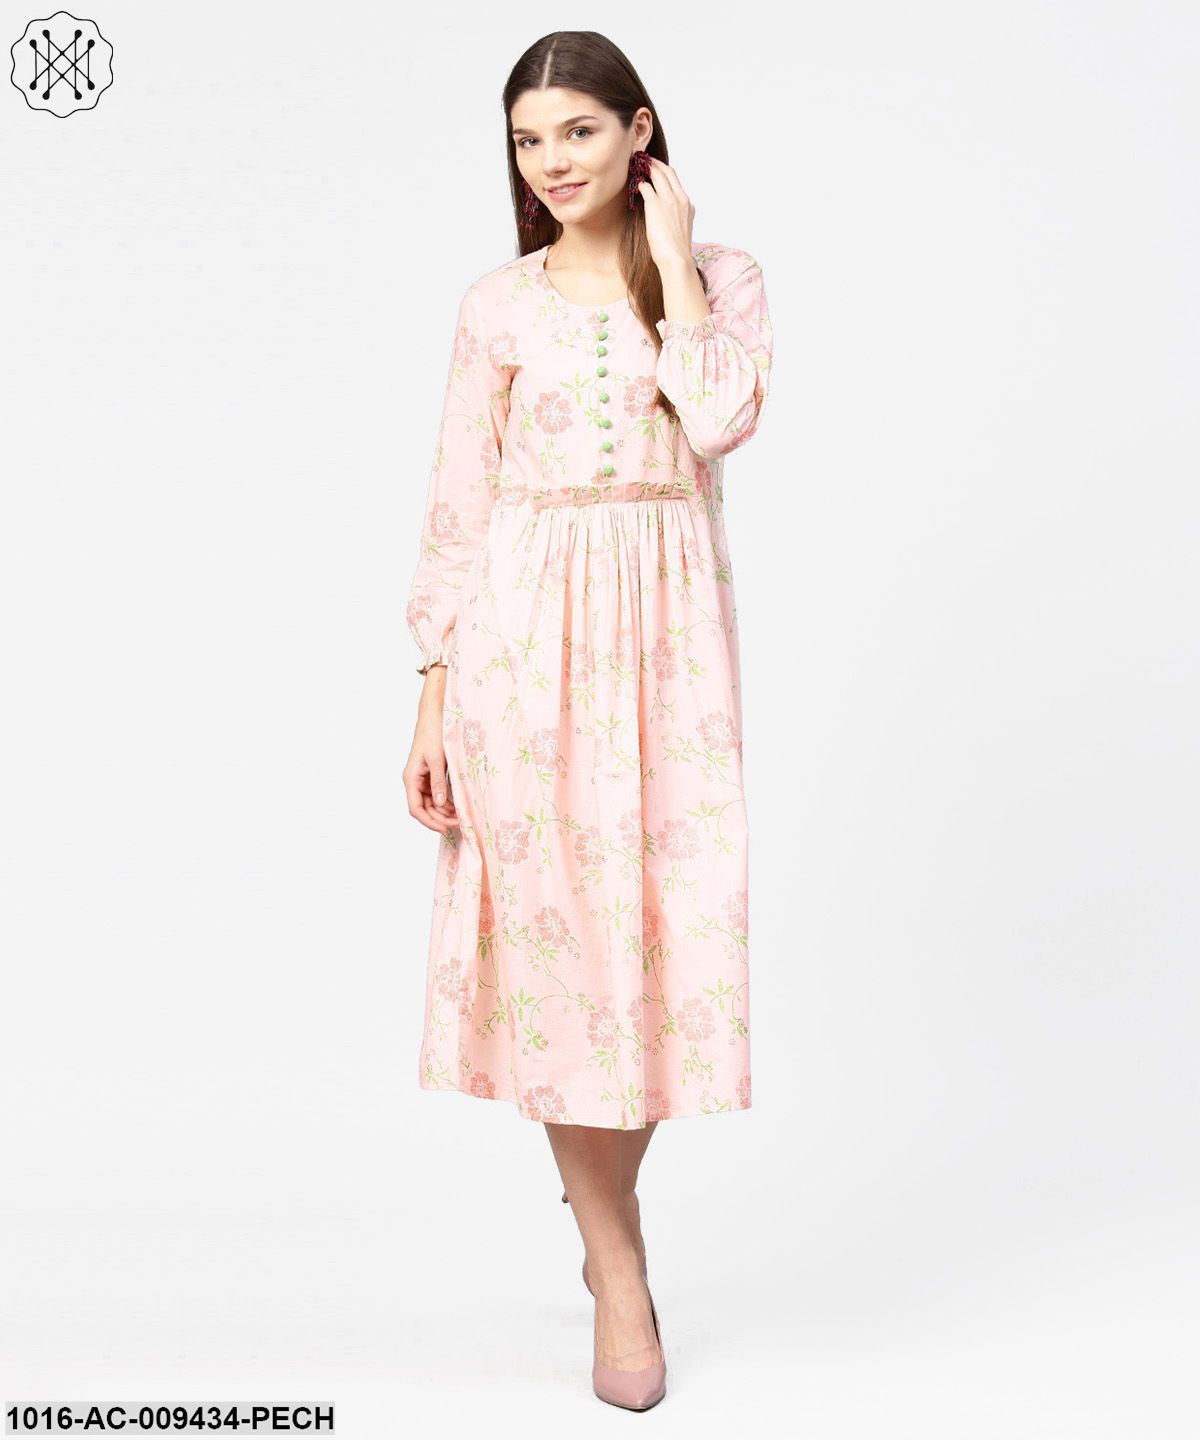 Peach Printed 3/4Th Sleeve Cotton A-Line Dress